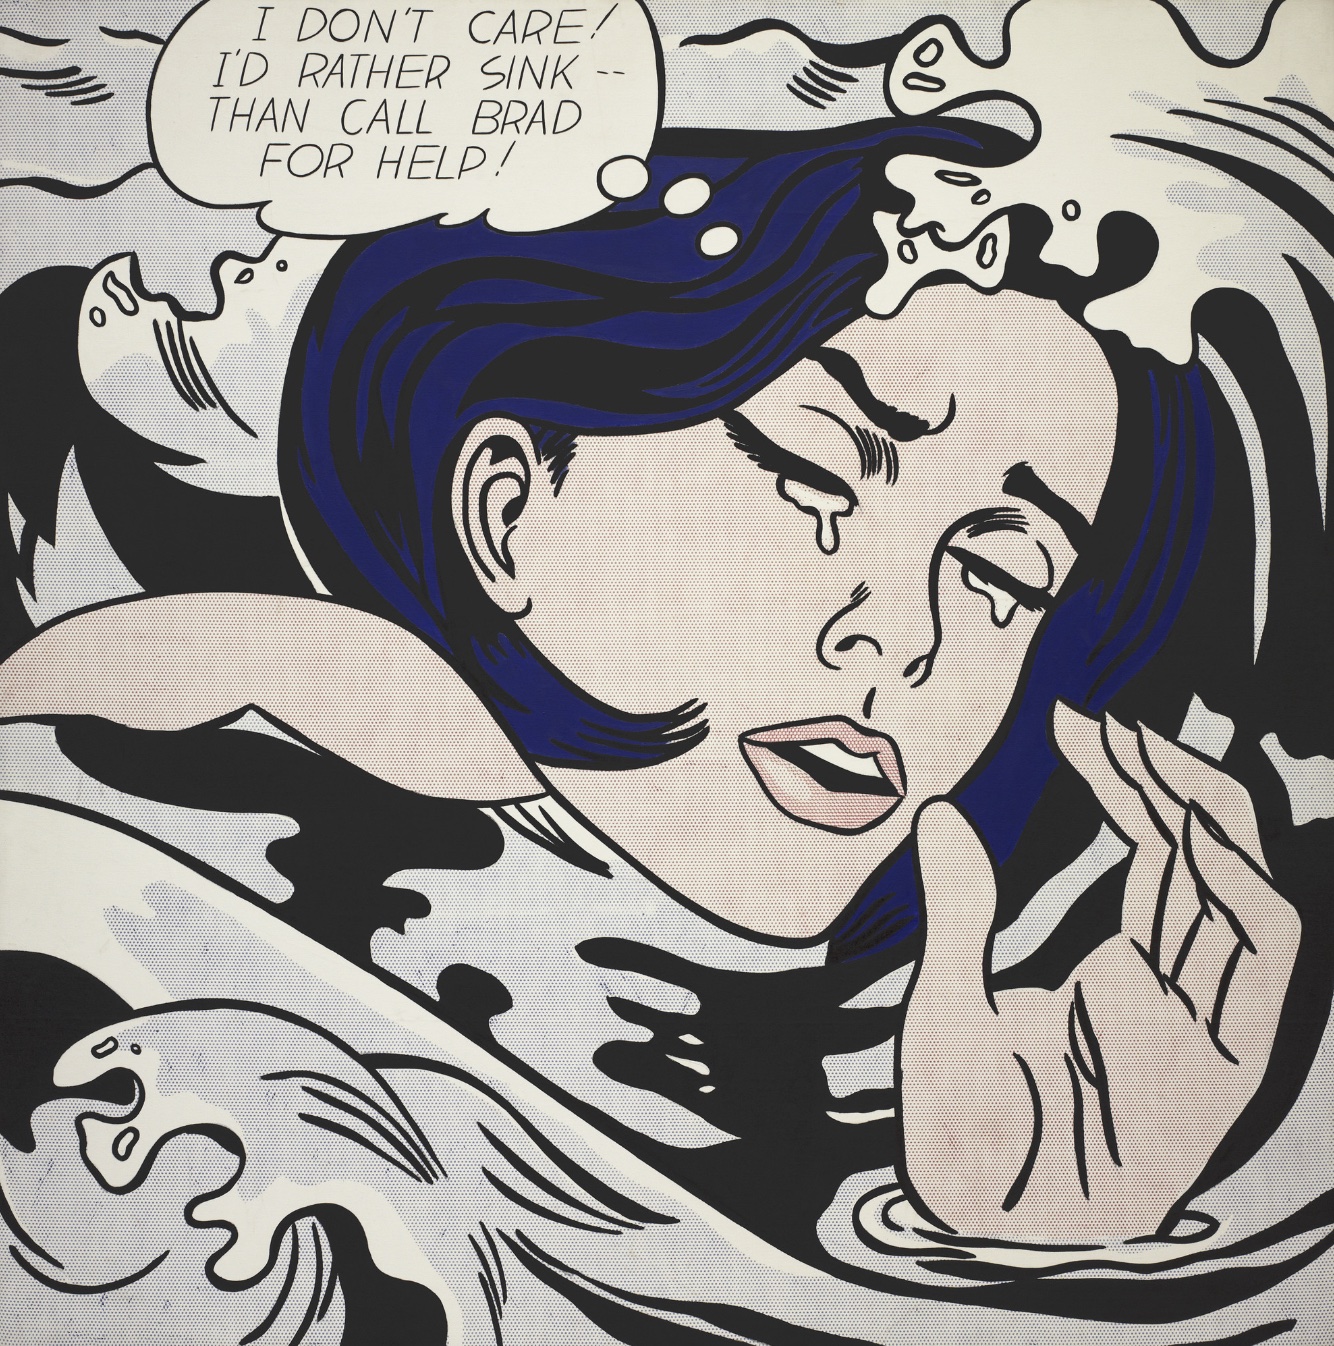 «Утопающая девушка» Роя Лихтенштейна — изображение плачущей женщины из комикса выше.